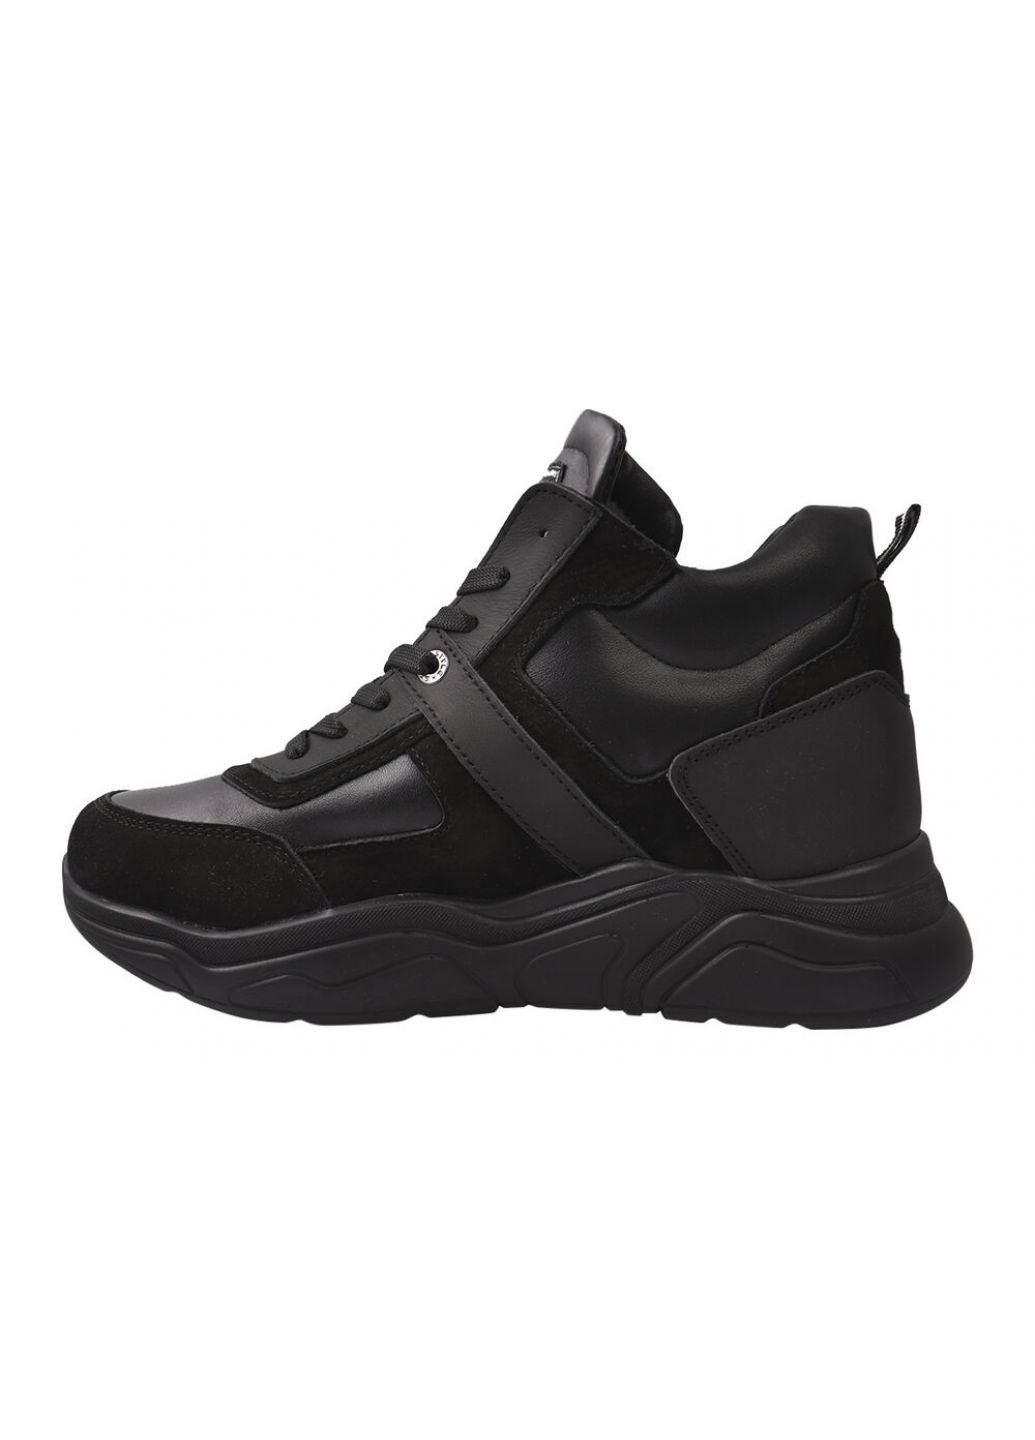 Черные ботинки мужские из натуральной кожи (нубук), на шнуровке, на платформе, черные, украина Konors 499-21ZHS